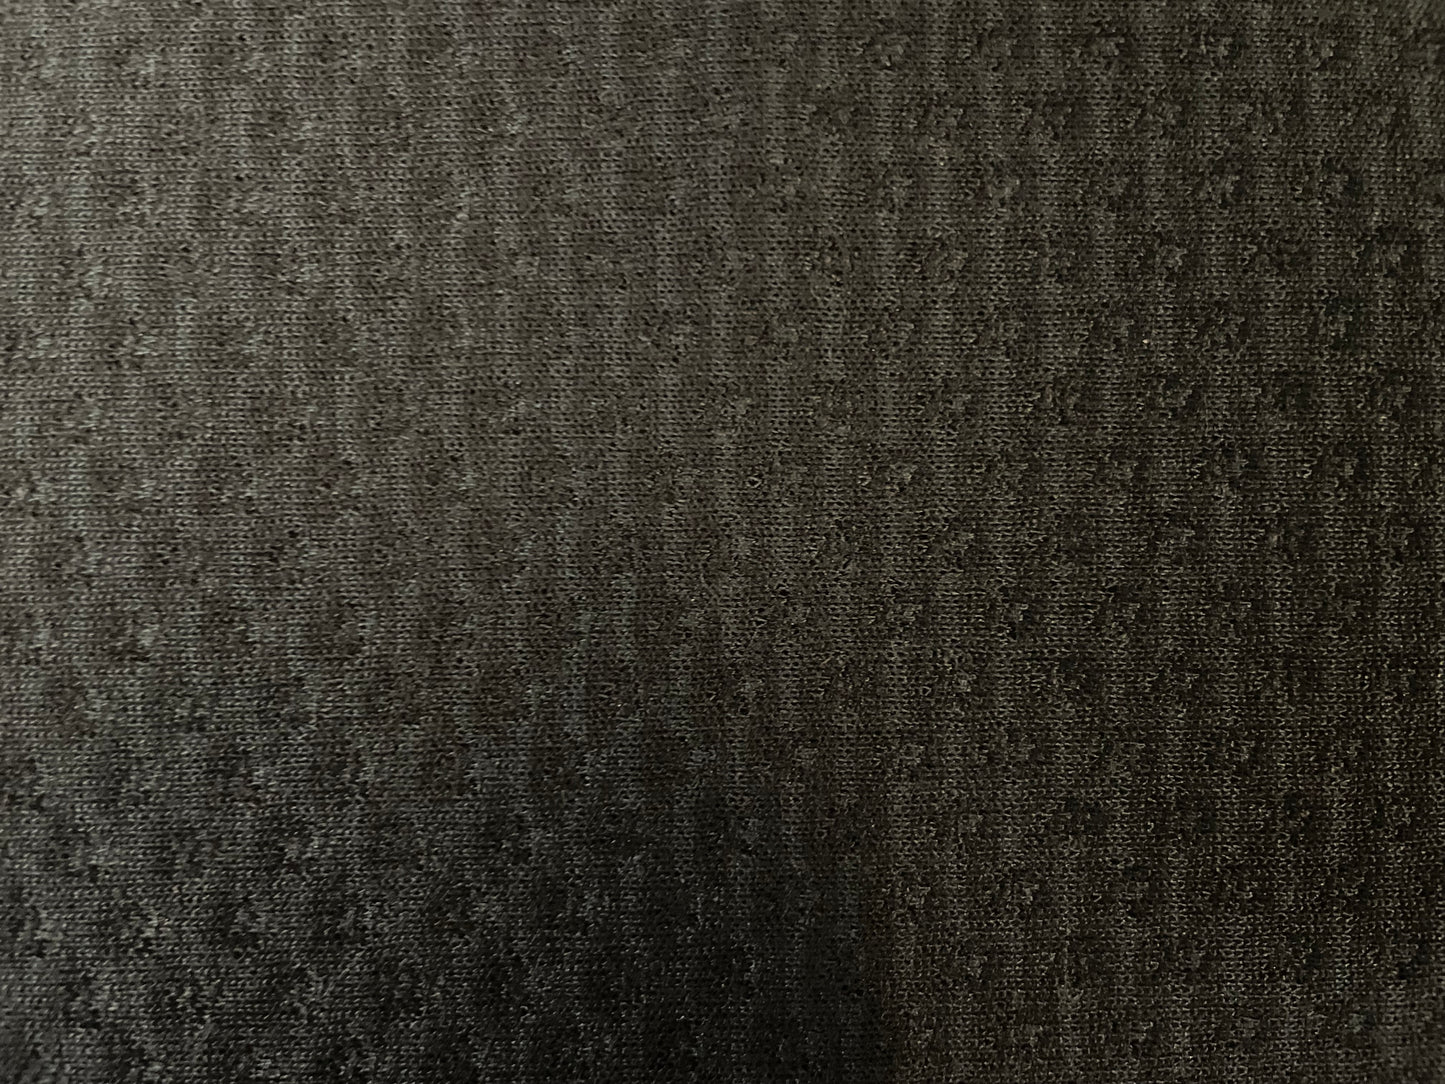 Textured Cotton Jersey - Warm Black